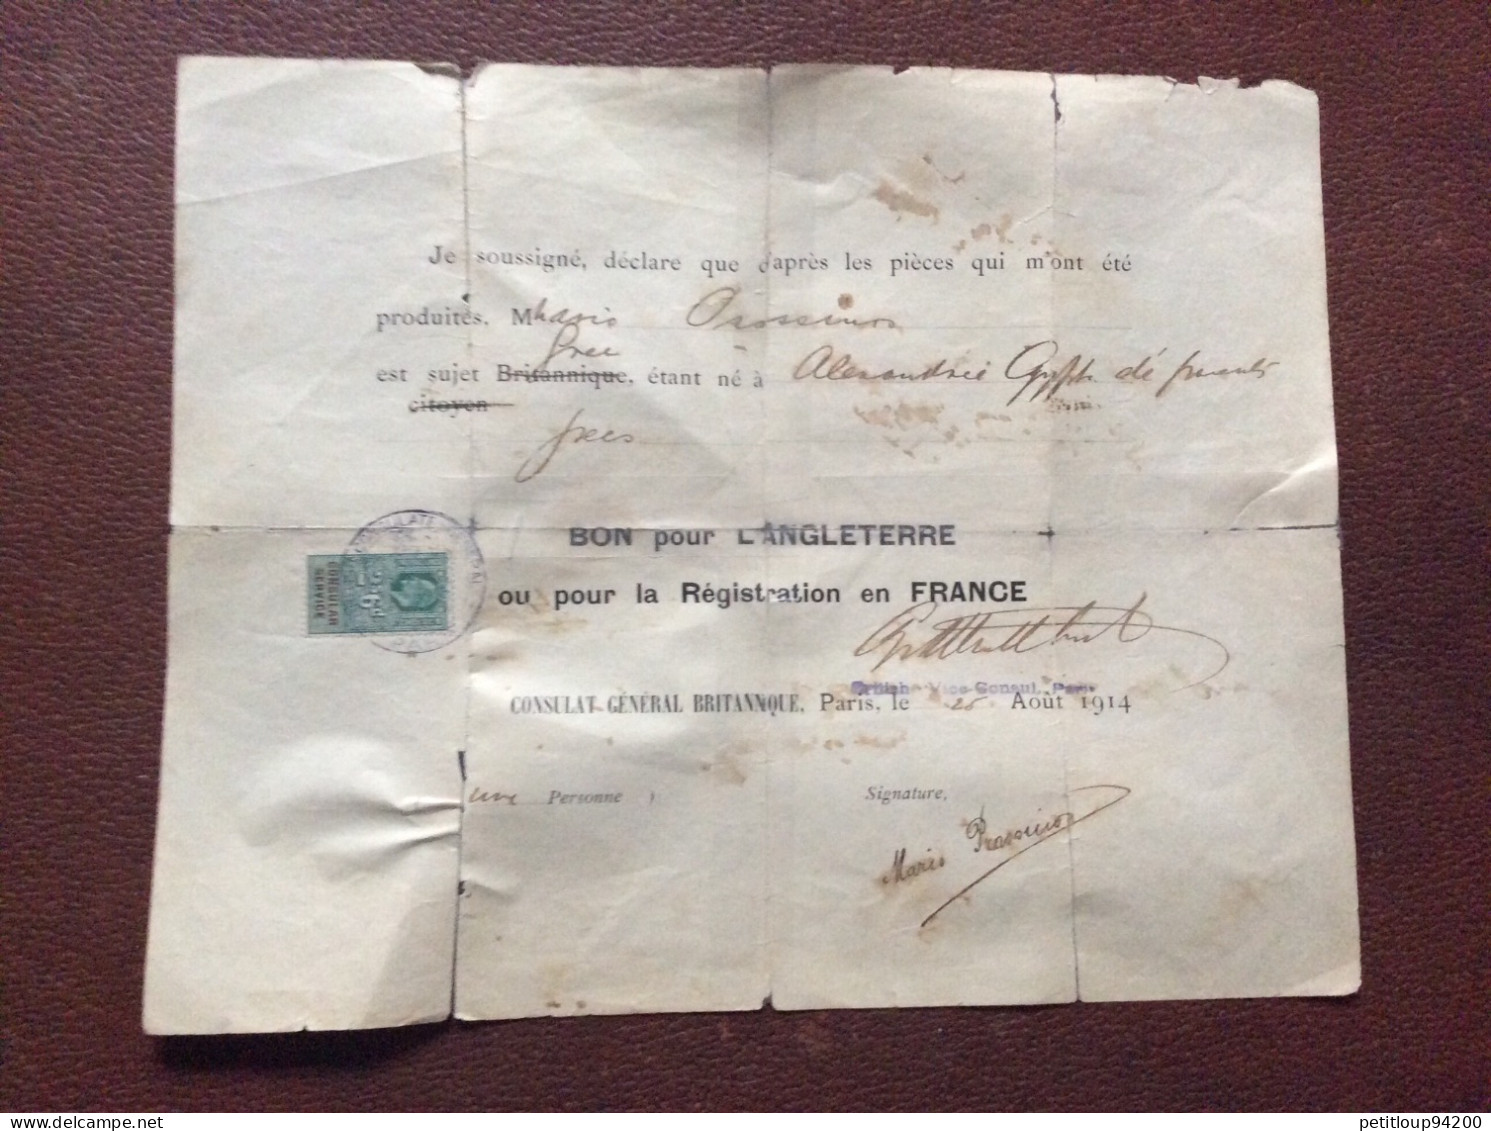 TIMBRE FISCAL SUR DOCUMENT Bon Pour L’ANGLETERRE  Registration En FRANCE  *2s 6d  CONSULAT GENERAL BRITANIQUE  1914 - Fiscaux